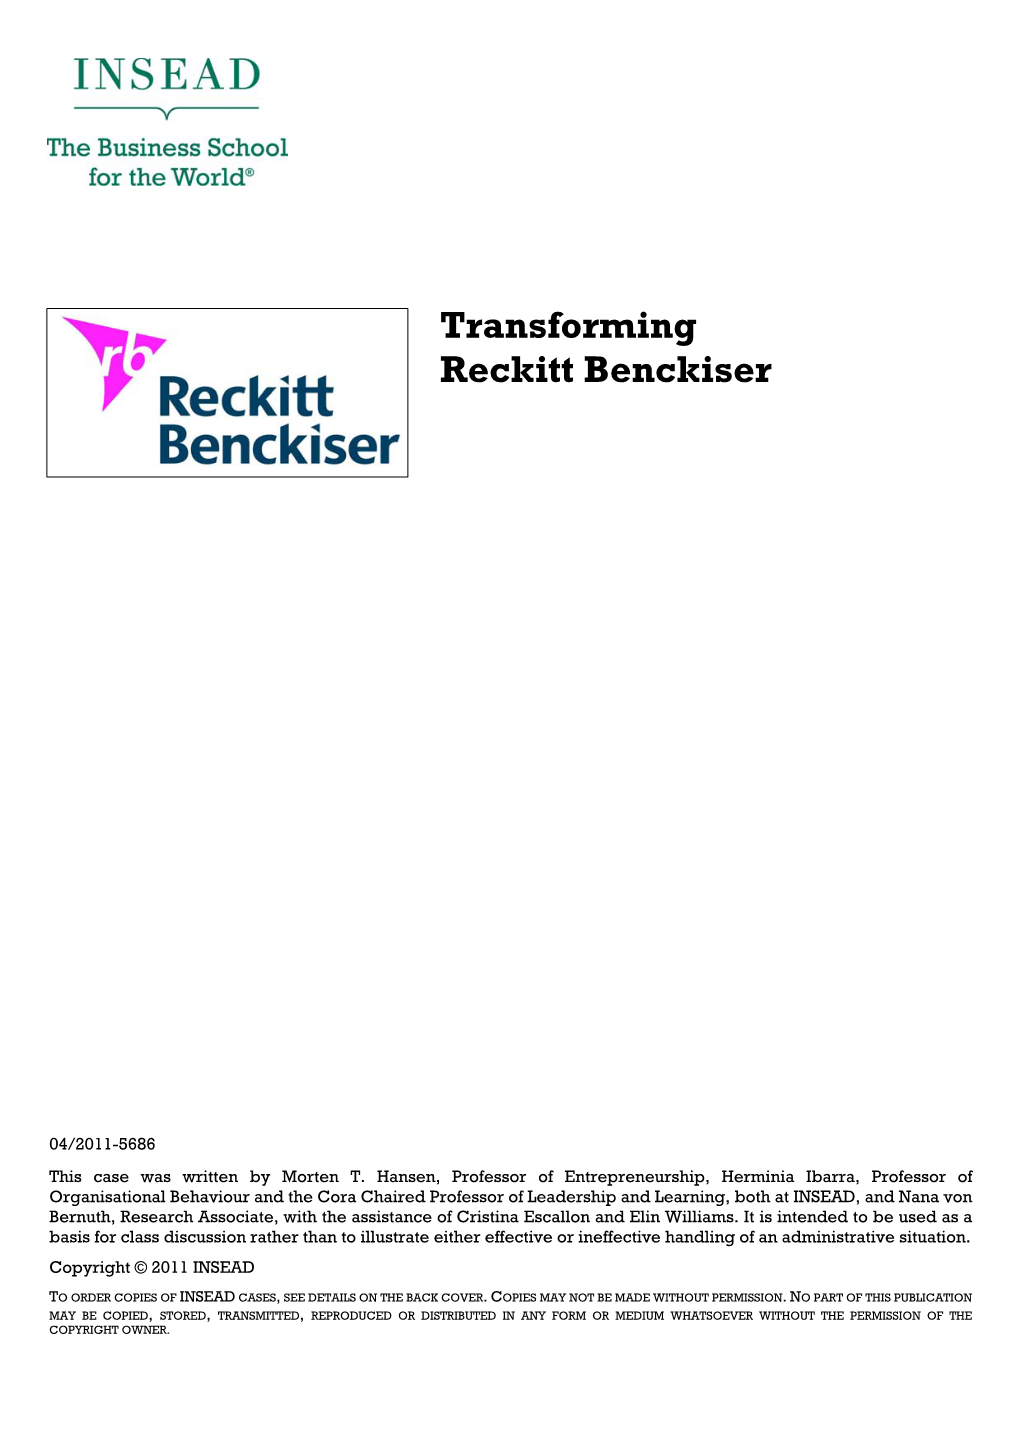 Transforming Reckitt Benckiser